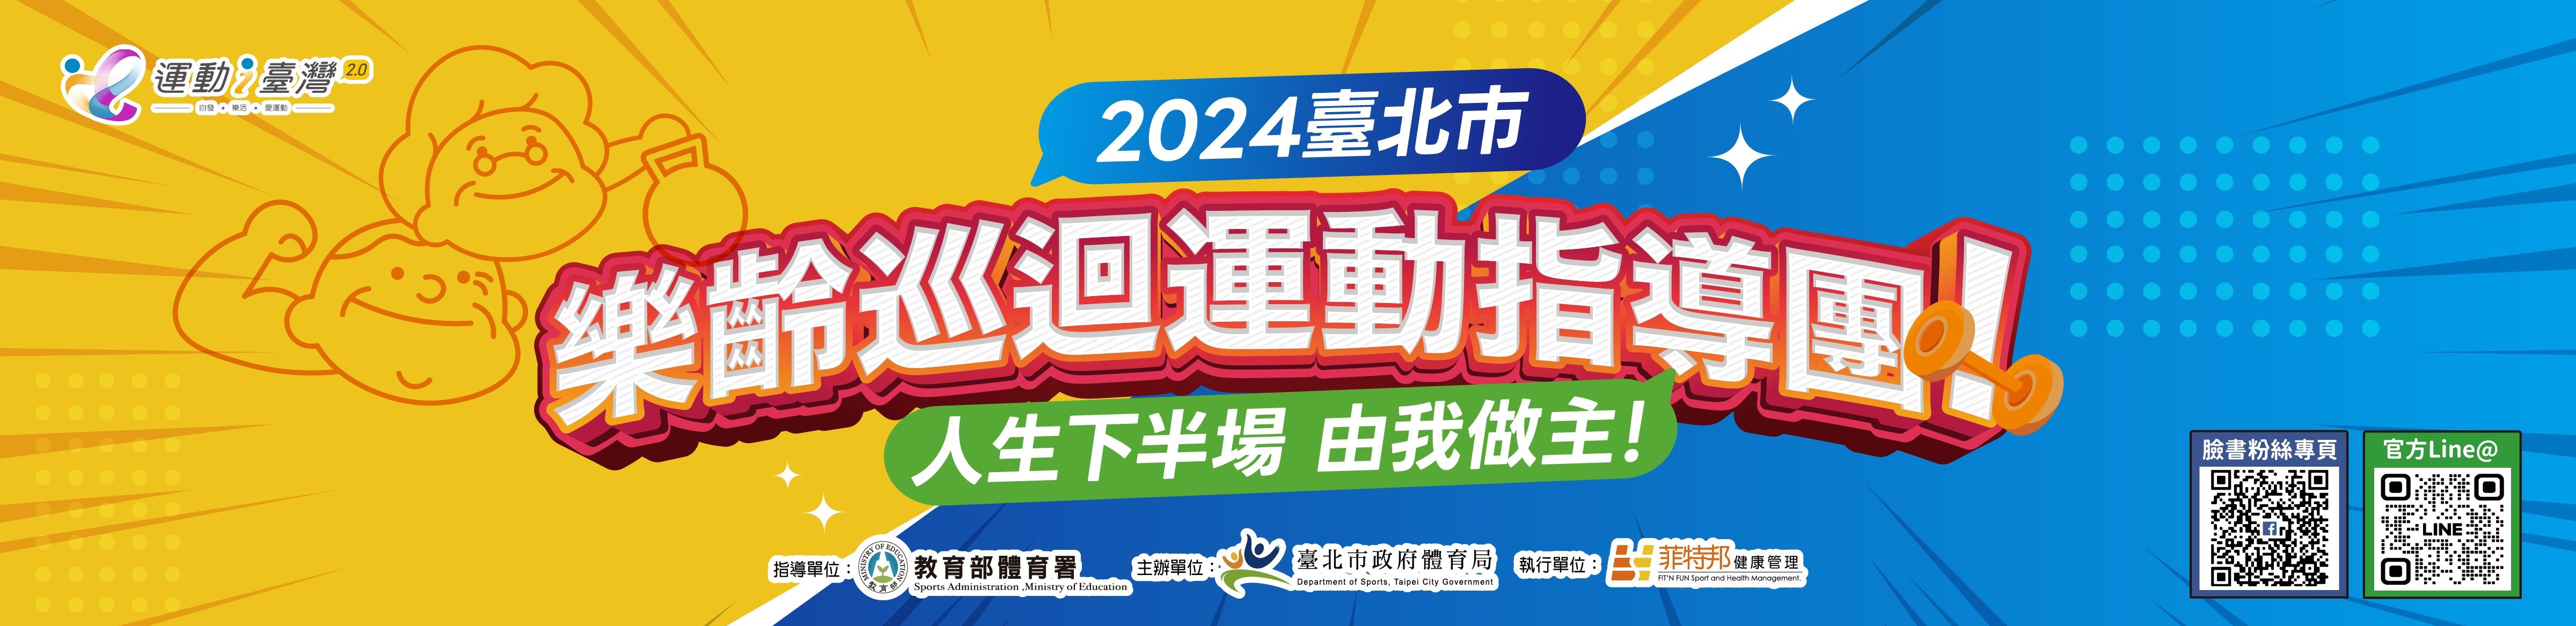 2024臺北市樂齡巡迴運動指導團